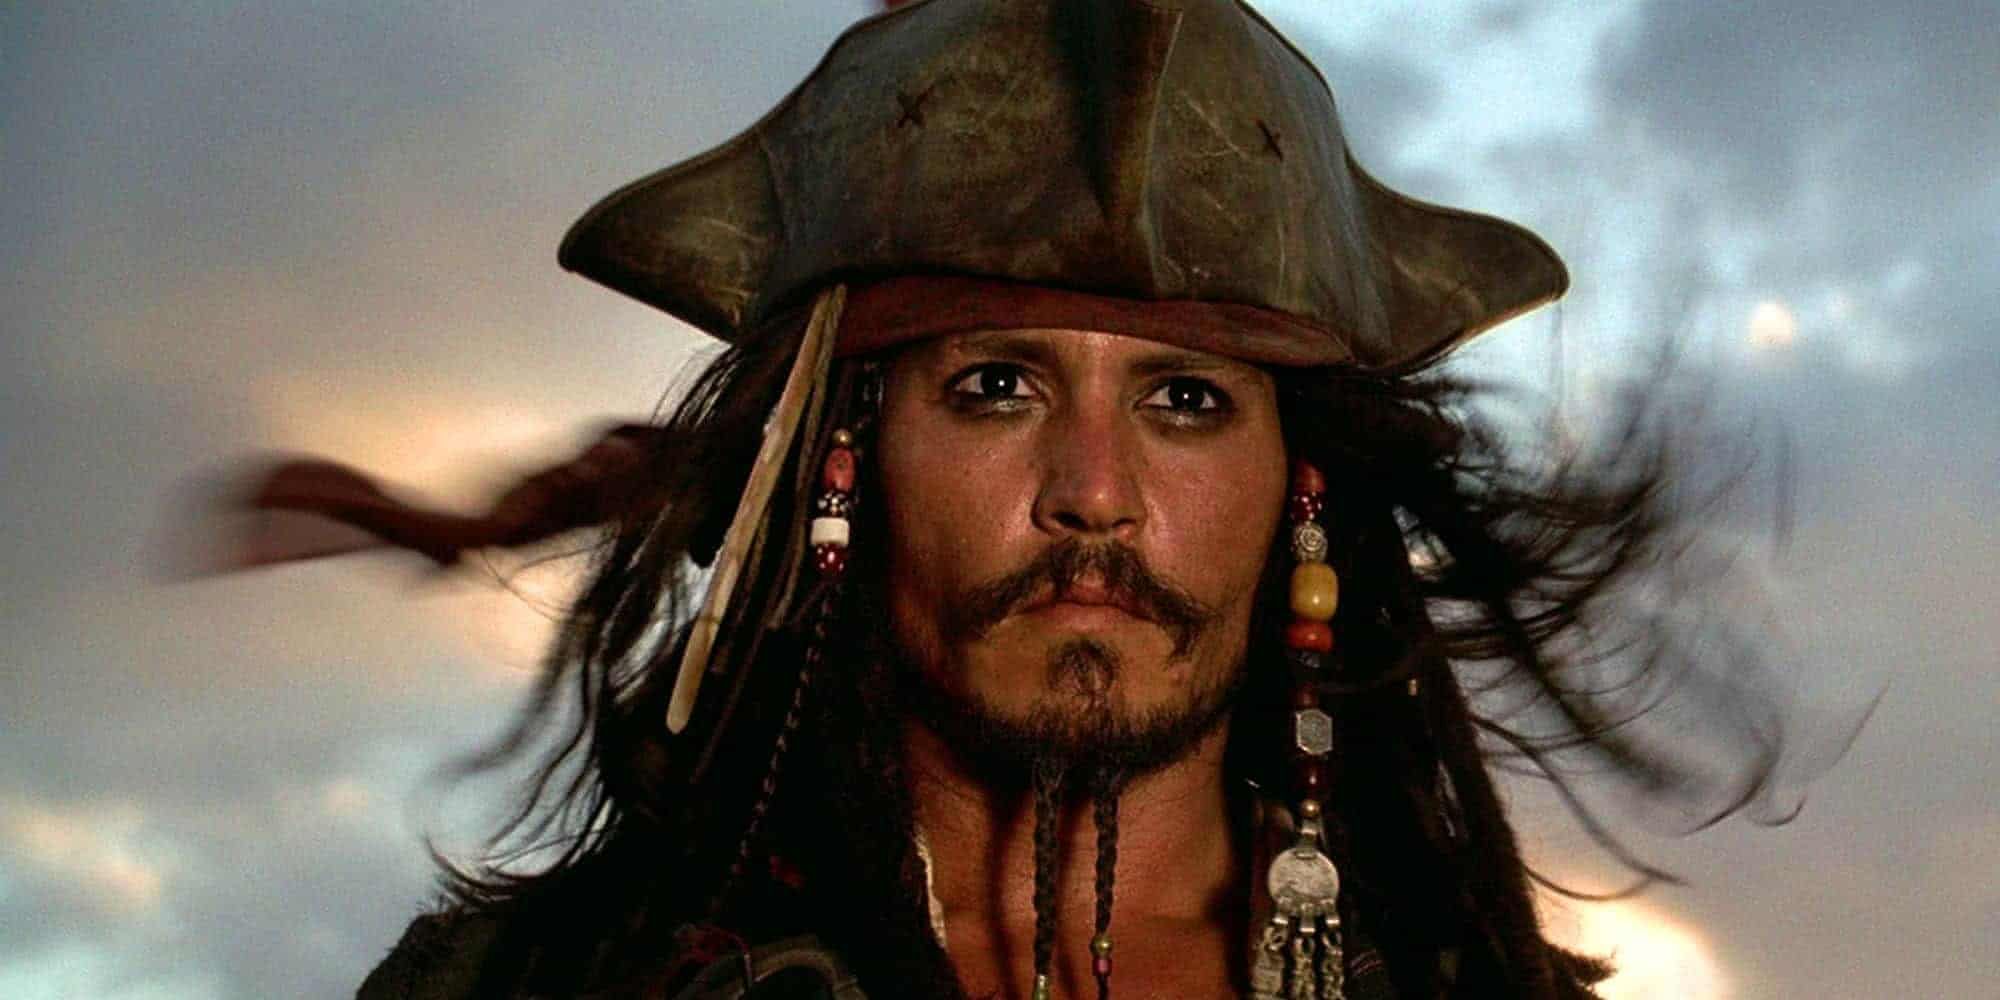 Capitán Jack Sparrow, interpretado por Johnny Depp.